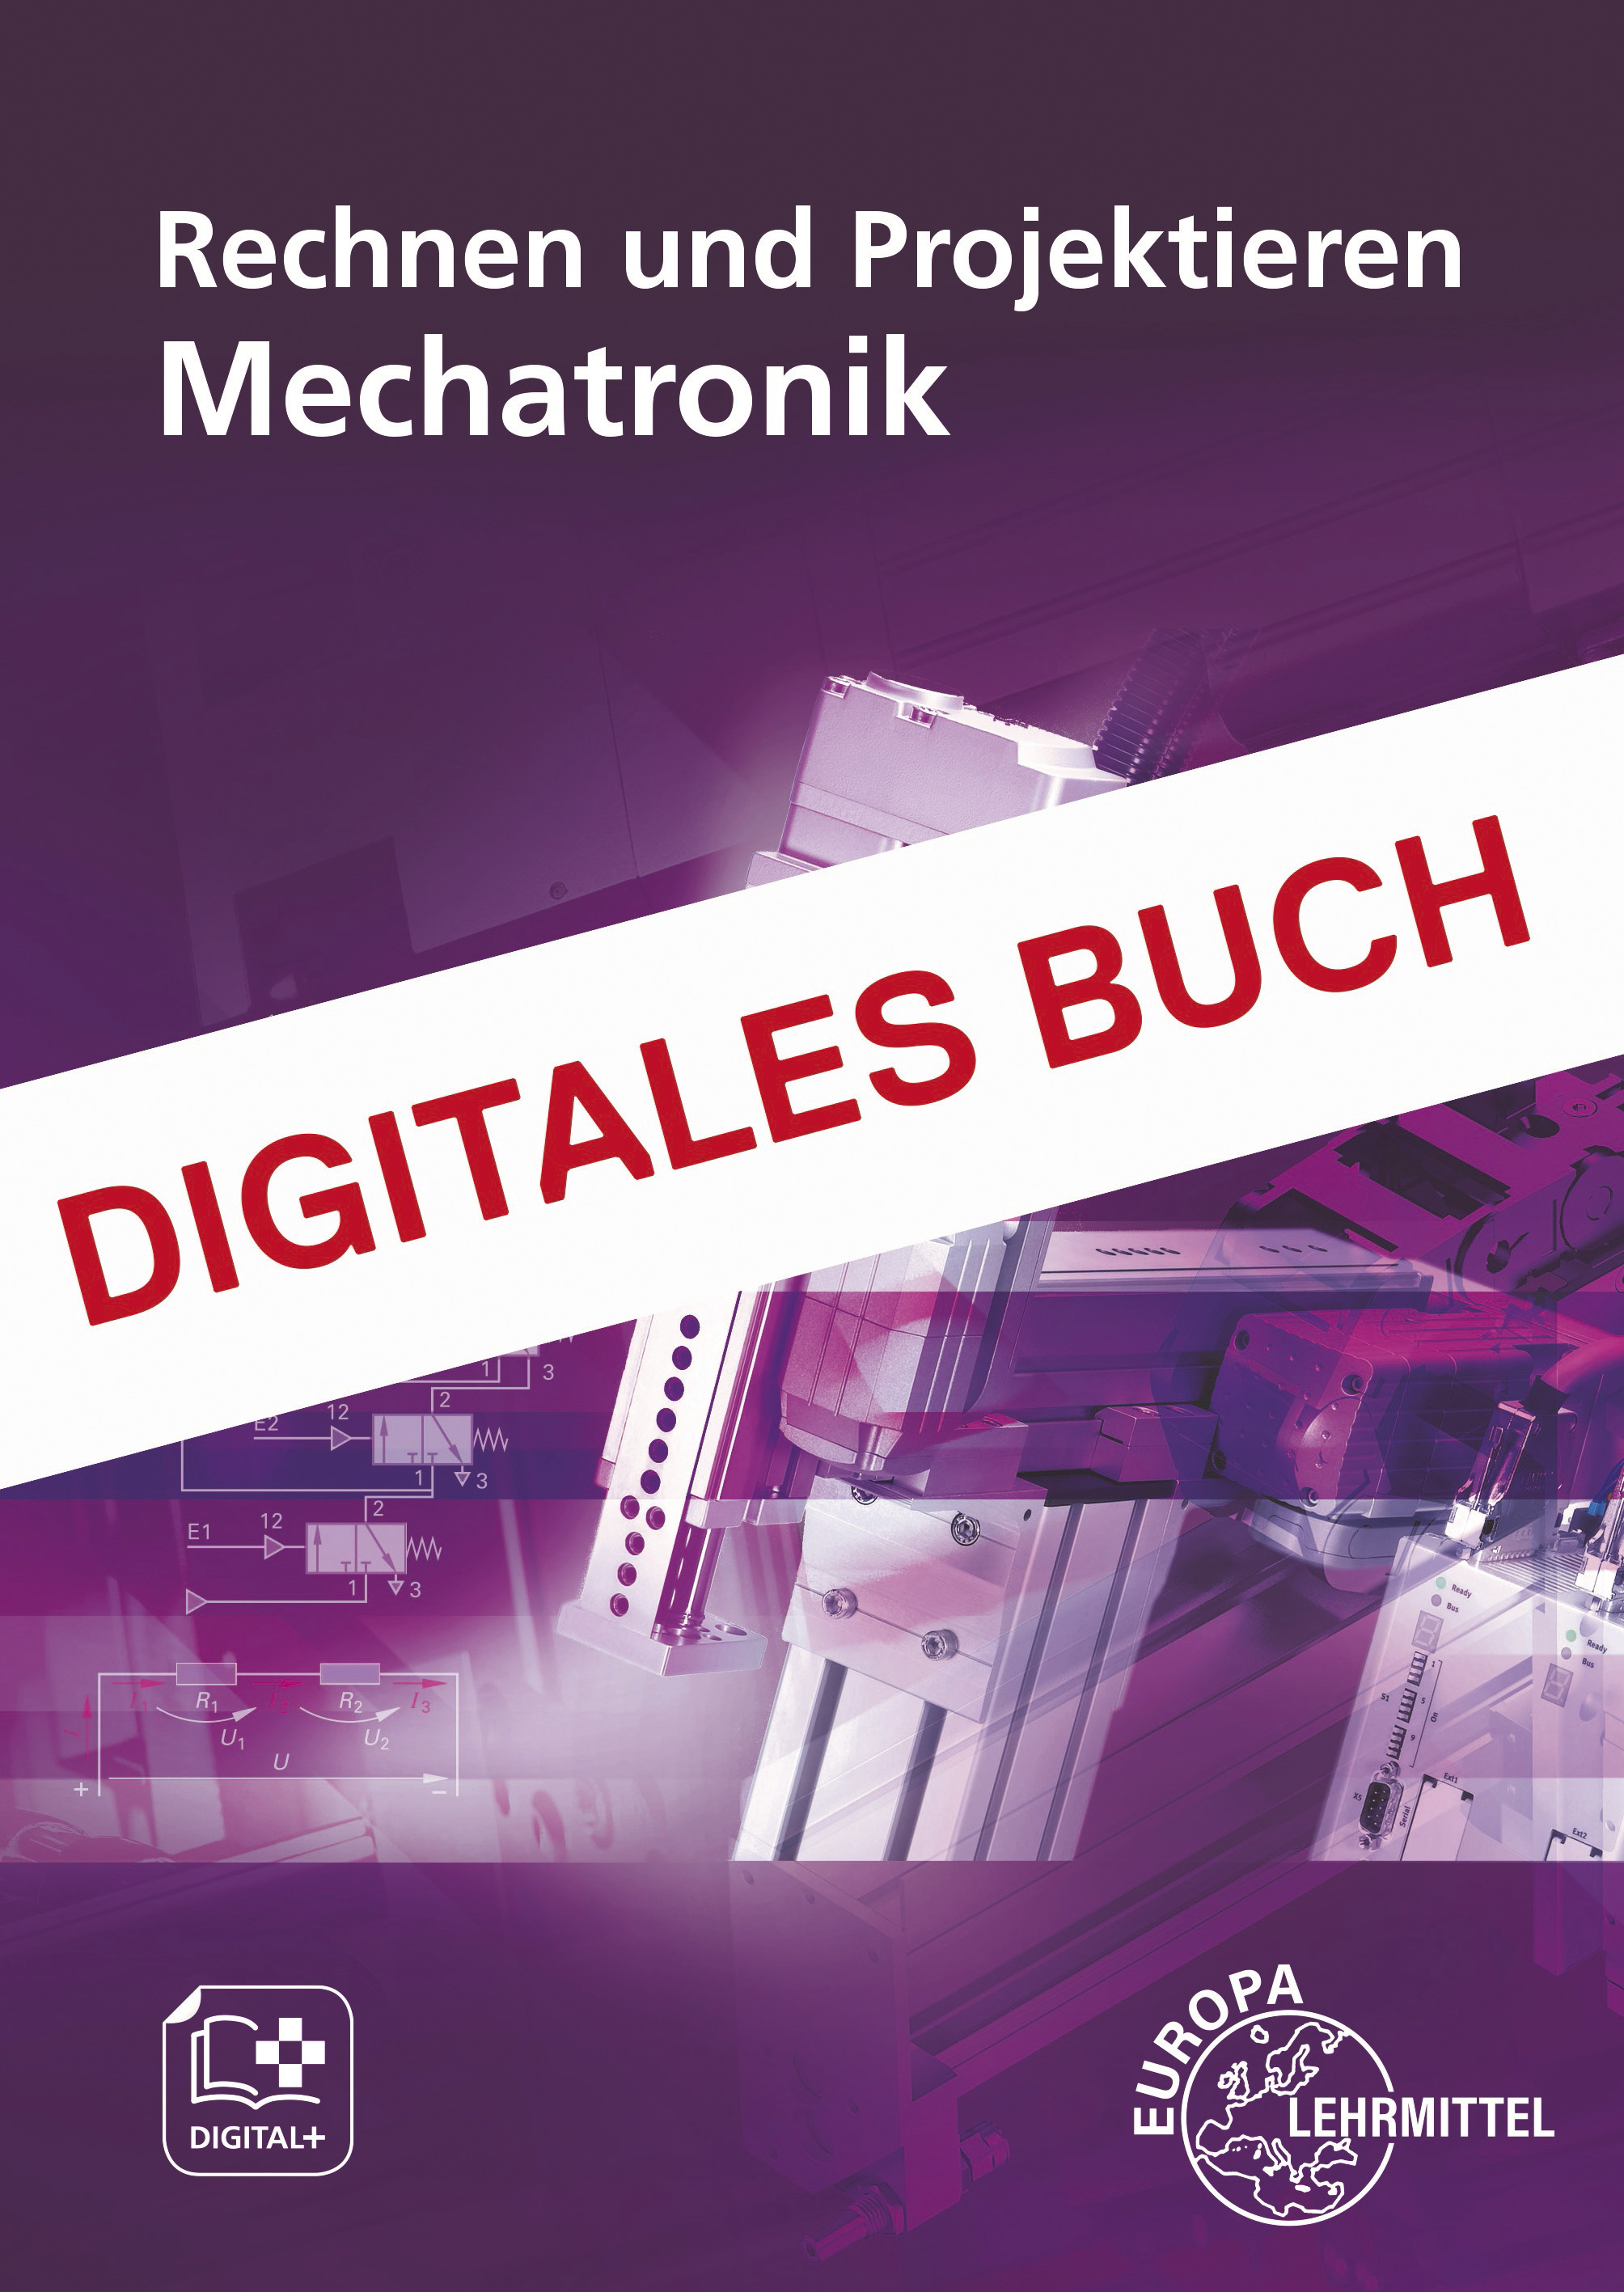 Rechnen und Projektieren Mechatronik - Digitales Buch